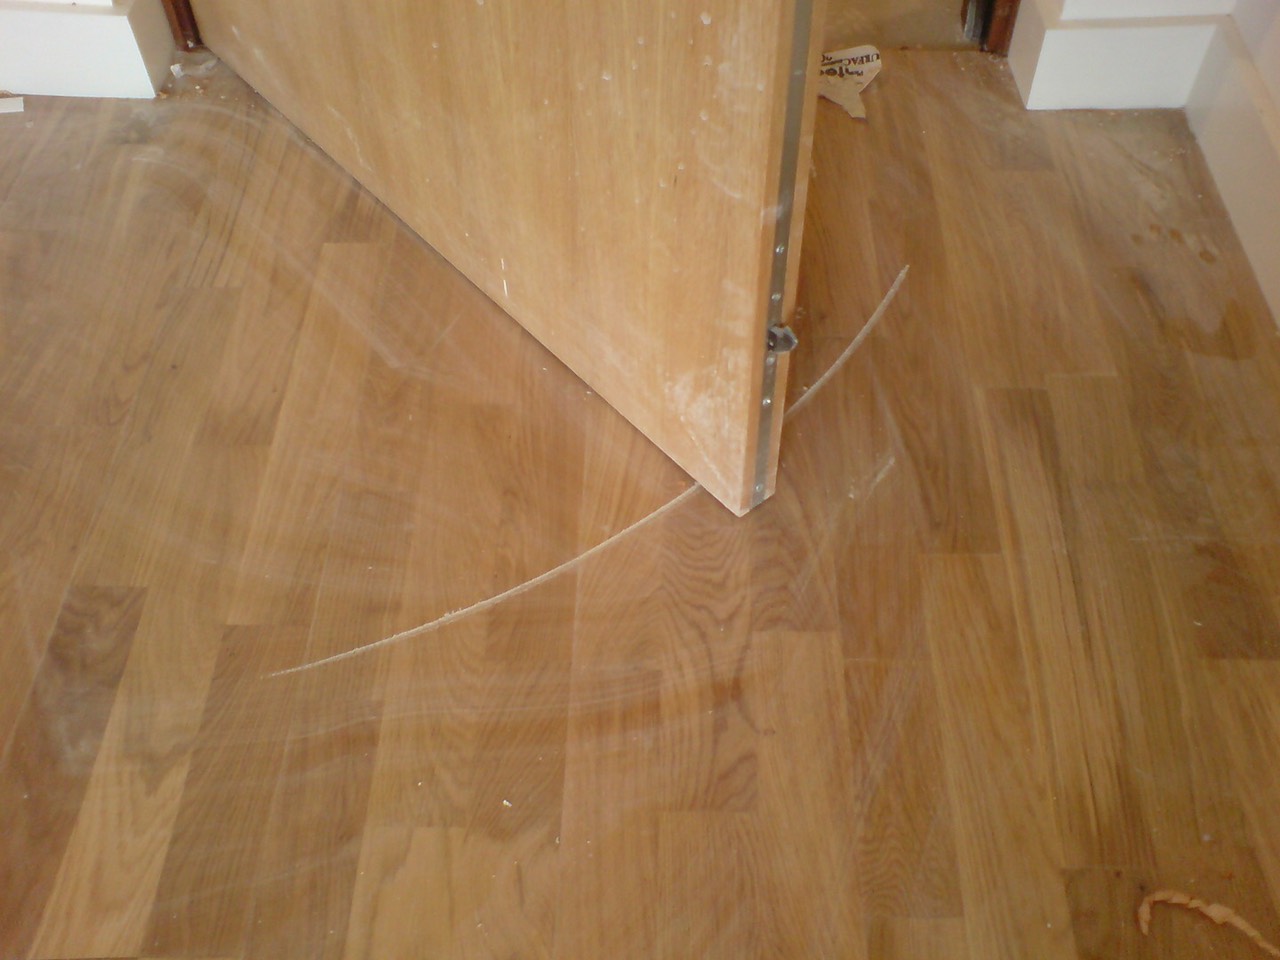 Cạnh cửa với bề mặt sắc nhọn tạo vết xước trên bề mặt sàn gỗ.